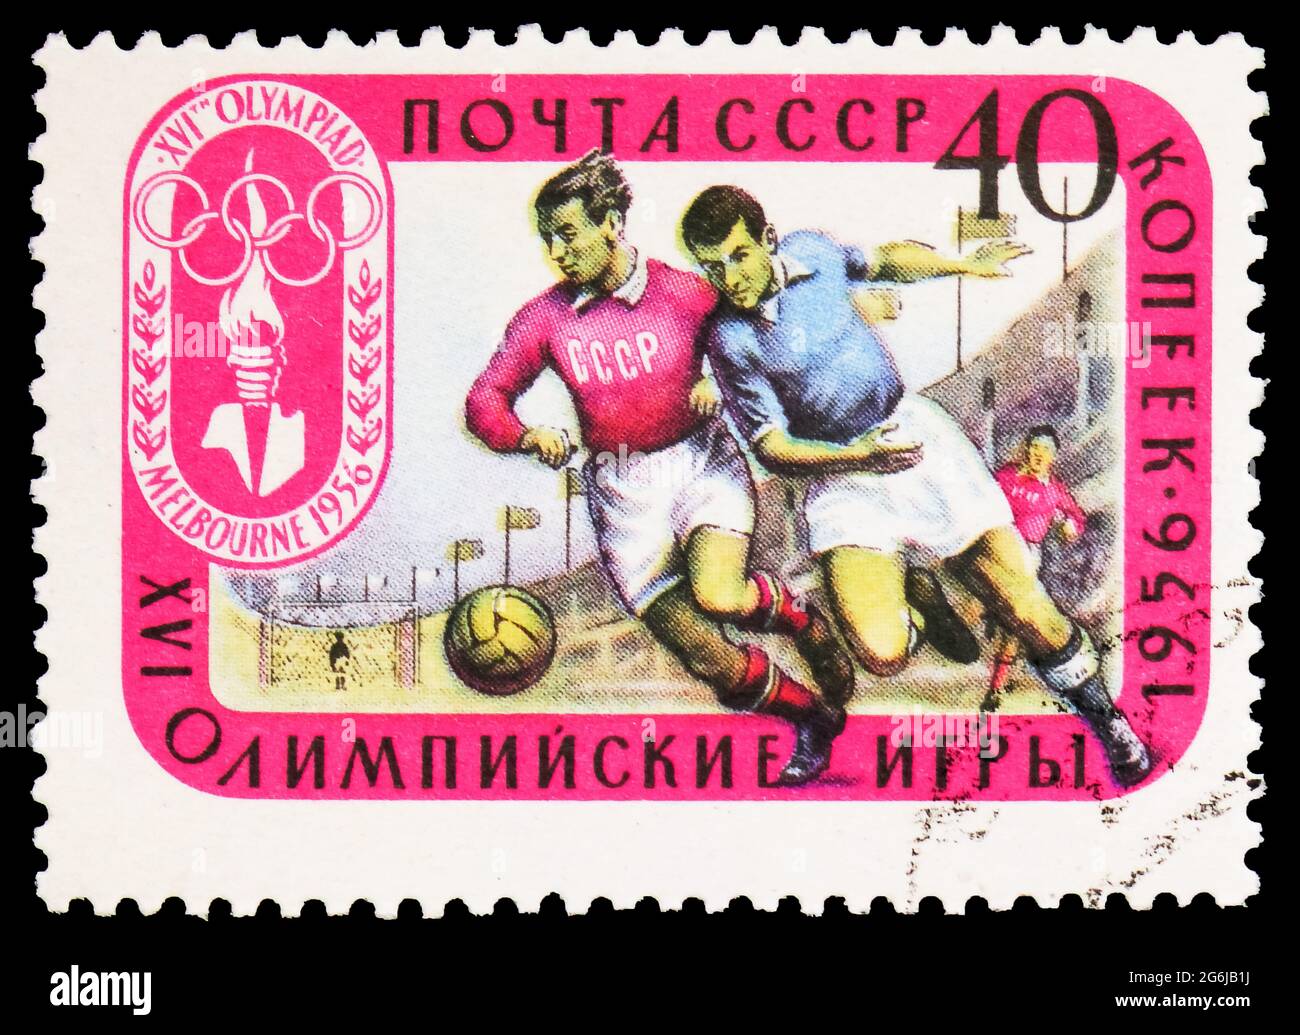 MOSCOU, RUSSIE - 21 MARS 2020 : timbre-poste imprimé en Union soviétique montre les joueurs de football, Jeux Olympiques 1956 - série Melbourne, vers 1957 Banque D'Images